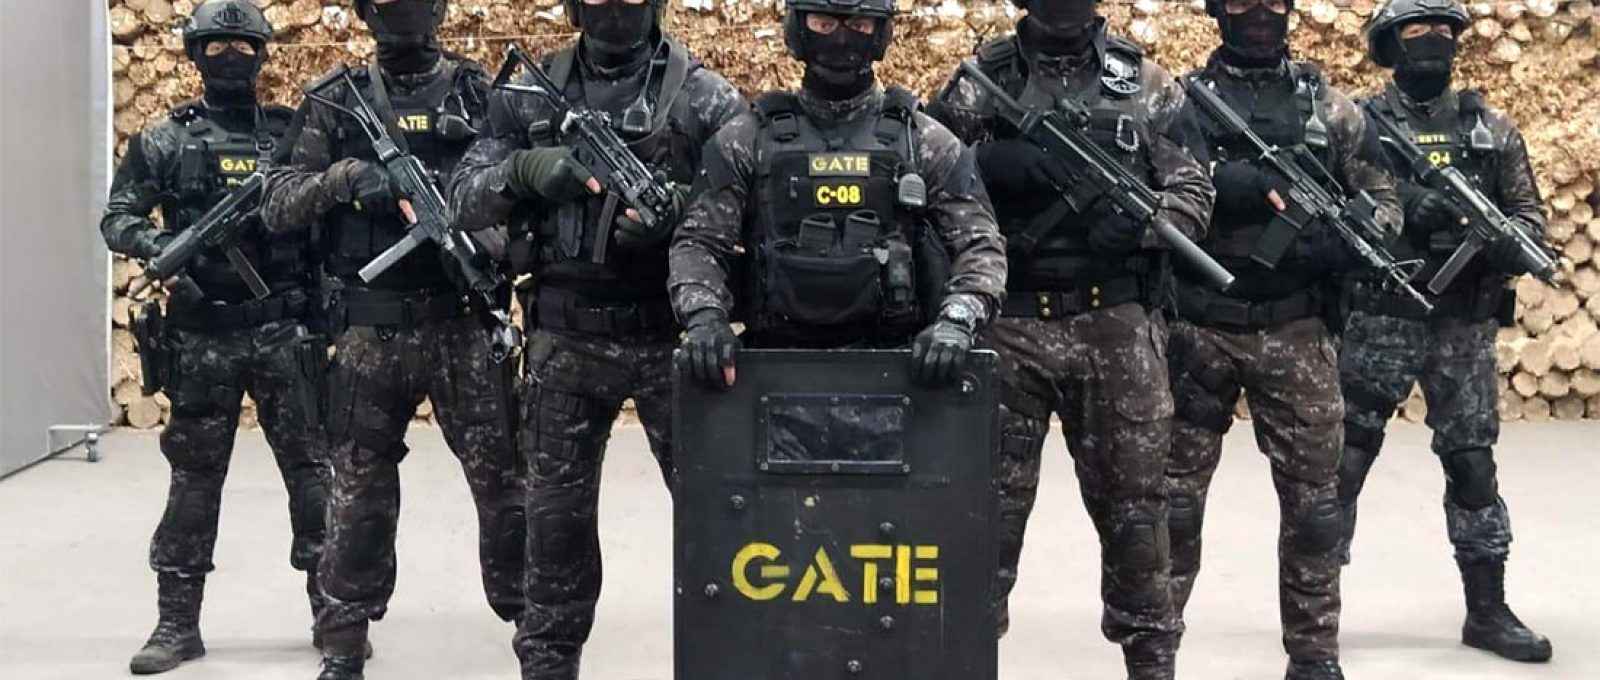 Foto: comando do GATE/Batalhão de Operações Especiais.